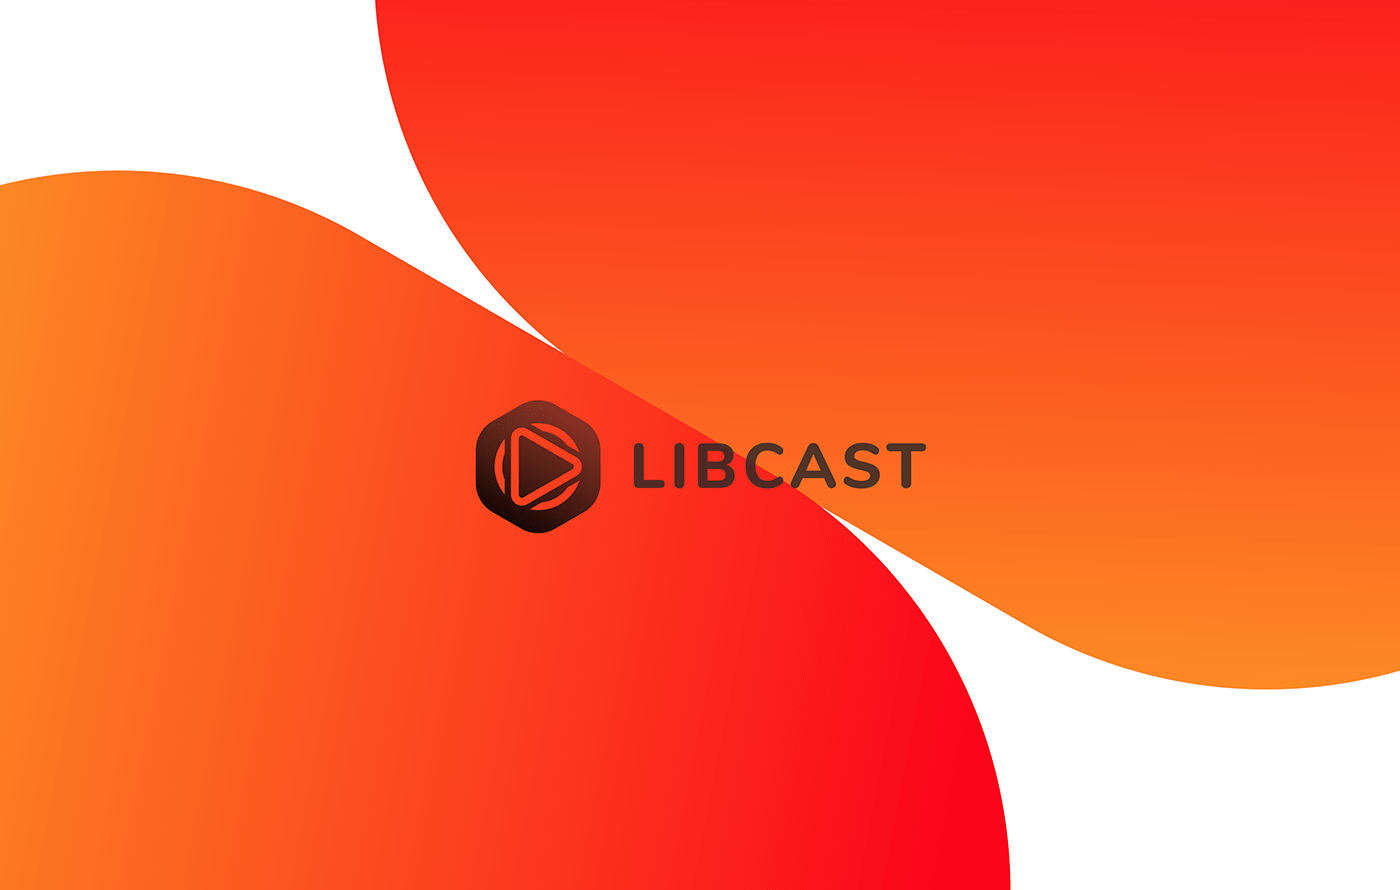 libcast Rebrand logo video player UX design marcello di giovanni gradient redesign brand